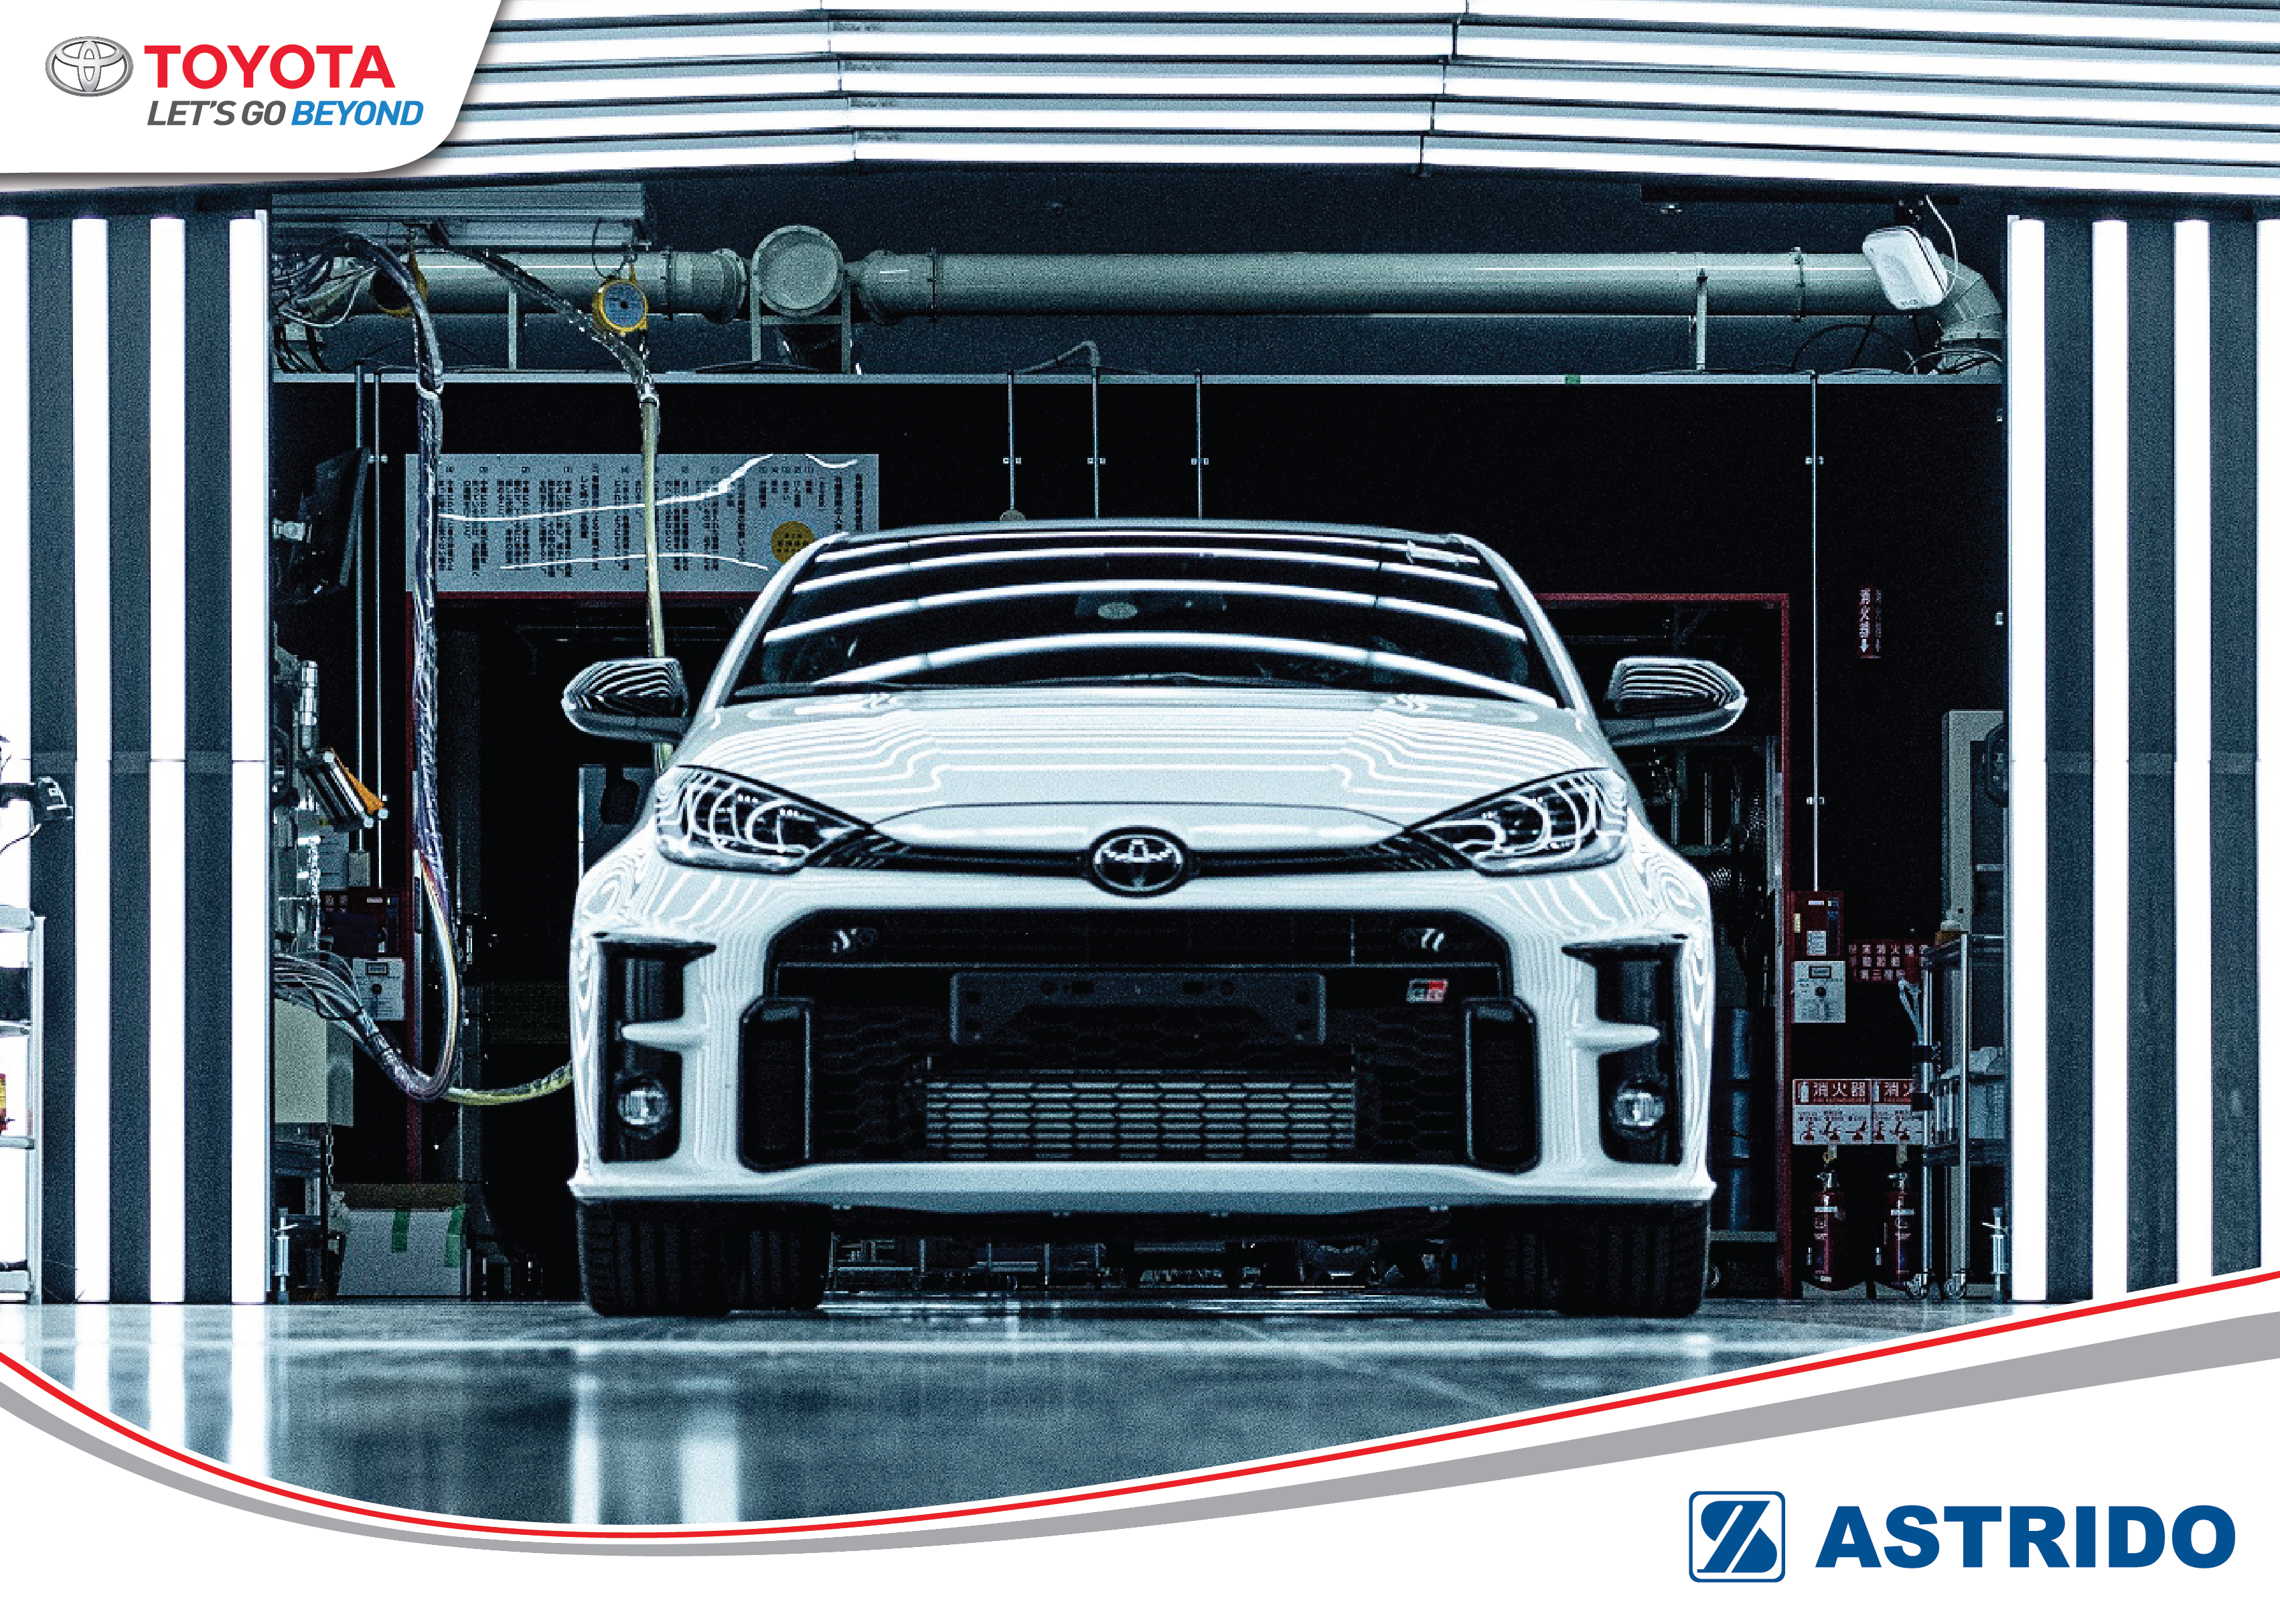 Toyota AStrido - GR Yaris, Mobil Andalan Toyota Untuk Menangkan Ajang World Rally Championship Segera Hadir di Indonesia